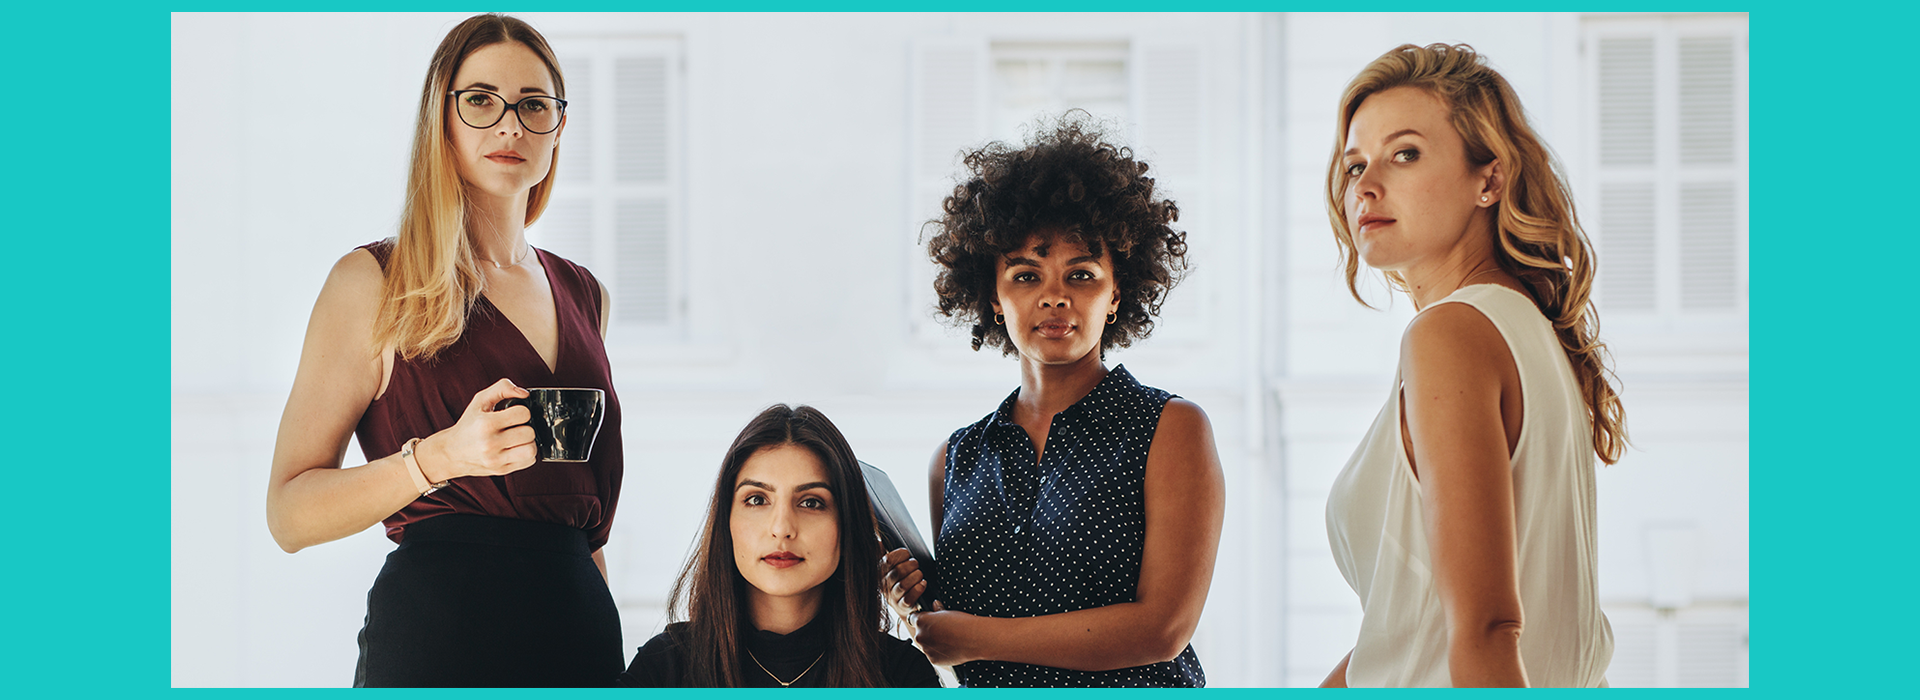 Empreendedorismo feminino: conheça 3 desafios e 3 mulheres inspiradoras